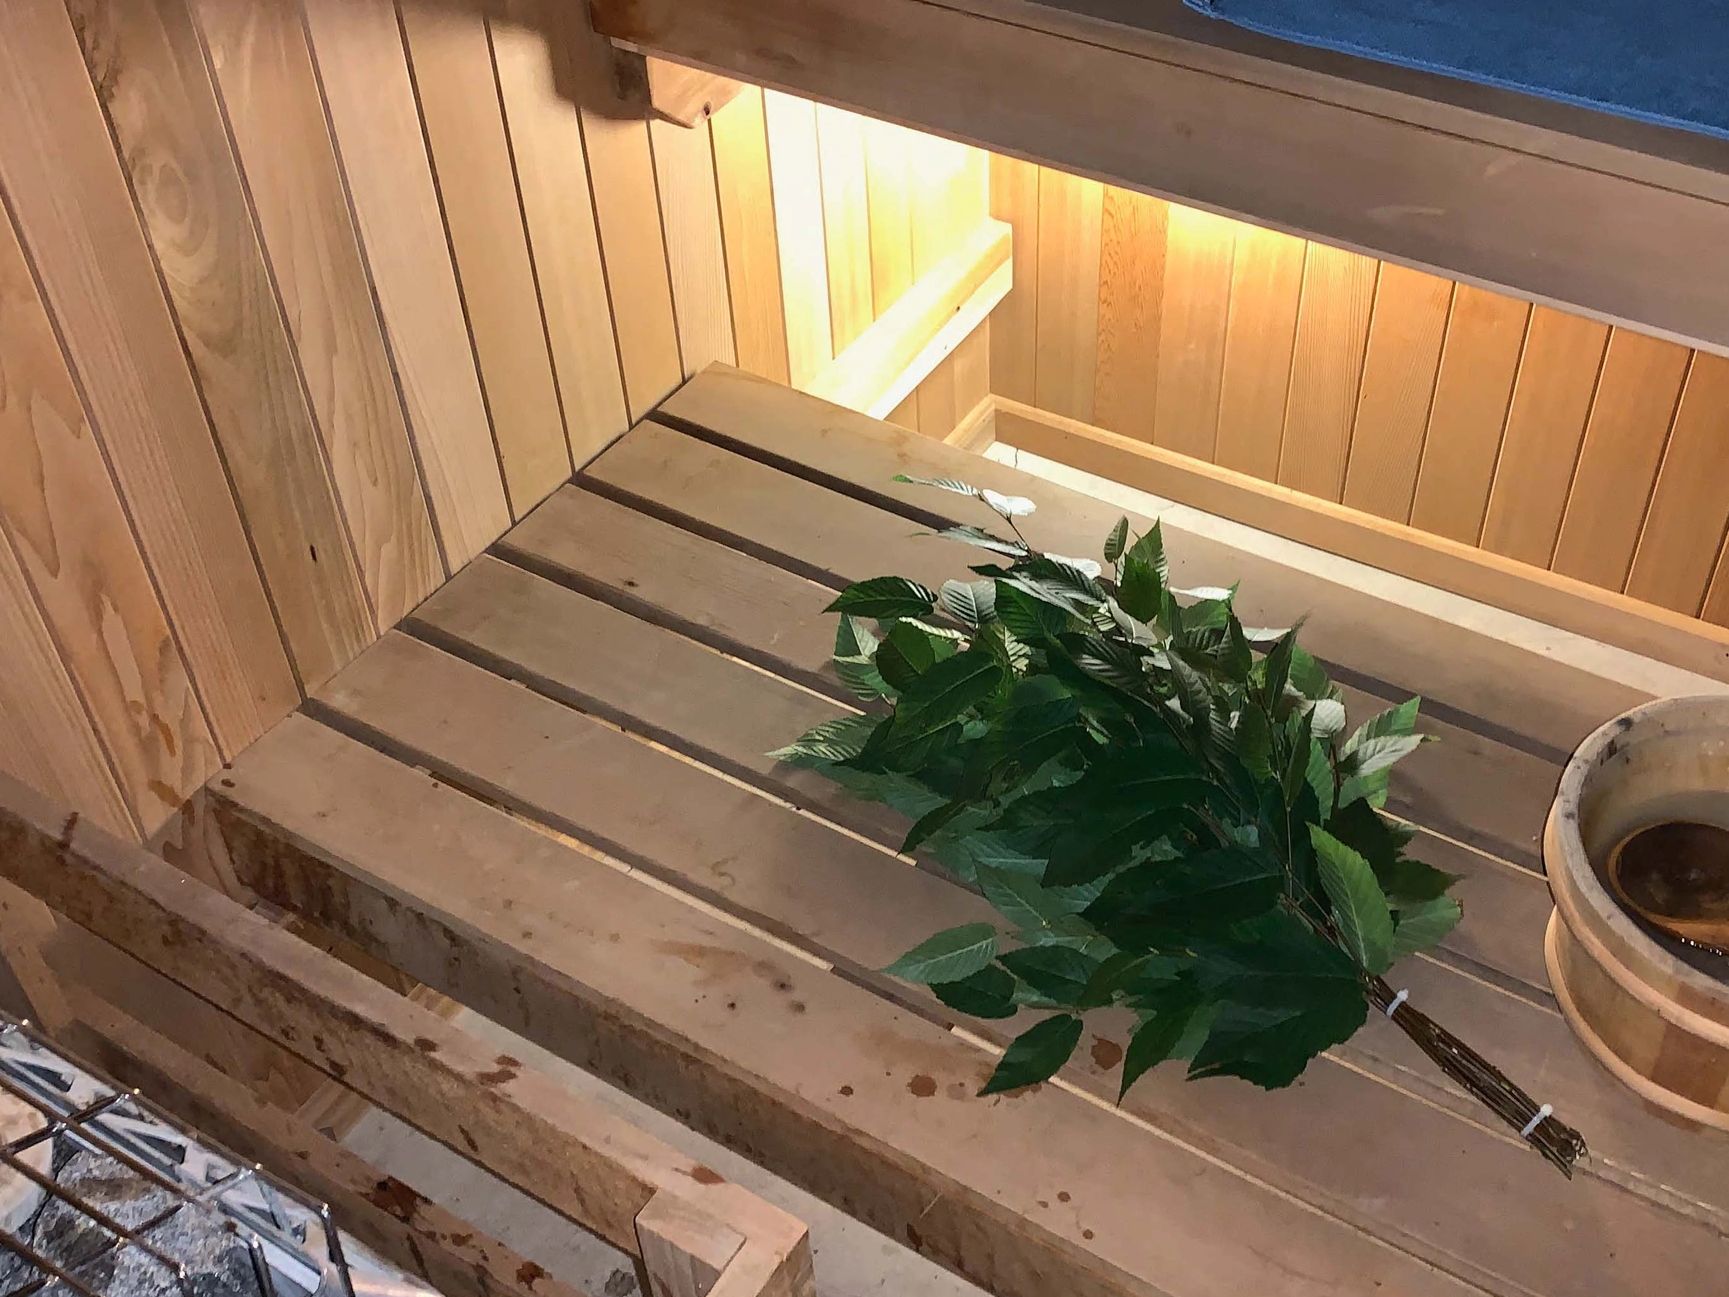 A sauna whisk sitting on a sauna bench